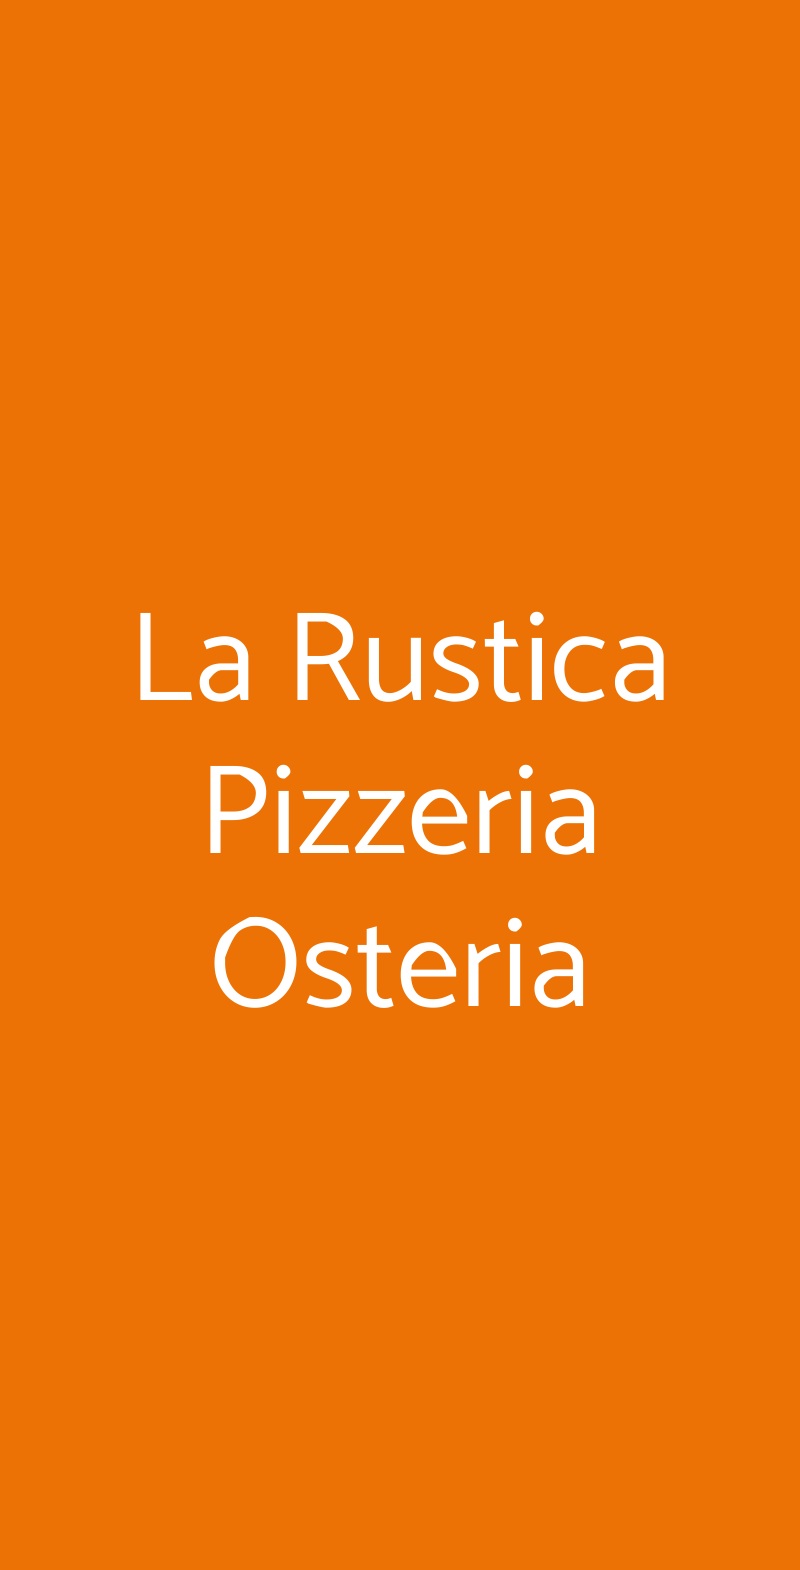 La Rustica Pizzeria Osteria Bologna menù 1 pagina